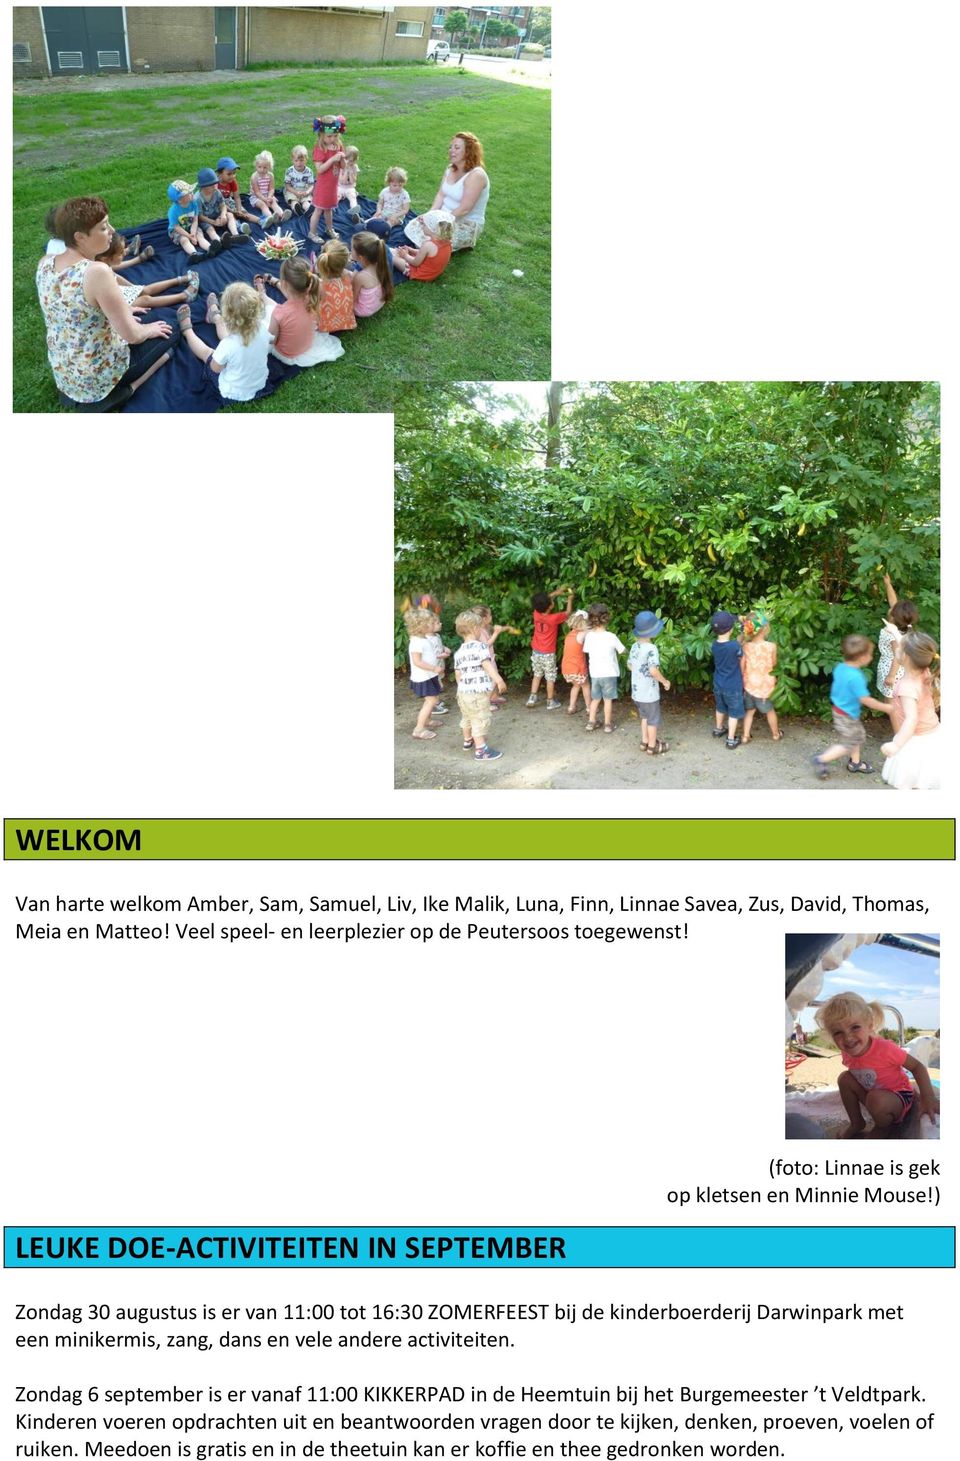 ) Zondag 30 augustus is er van 11:00 tot 16:30 ZOMERFEEST bij de kinderboerderij Darwinpark met een minikermis, zang, dans en vele andere activiteiten.